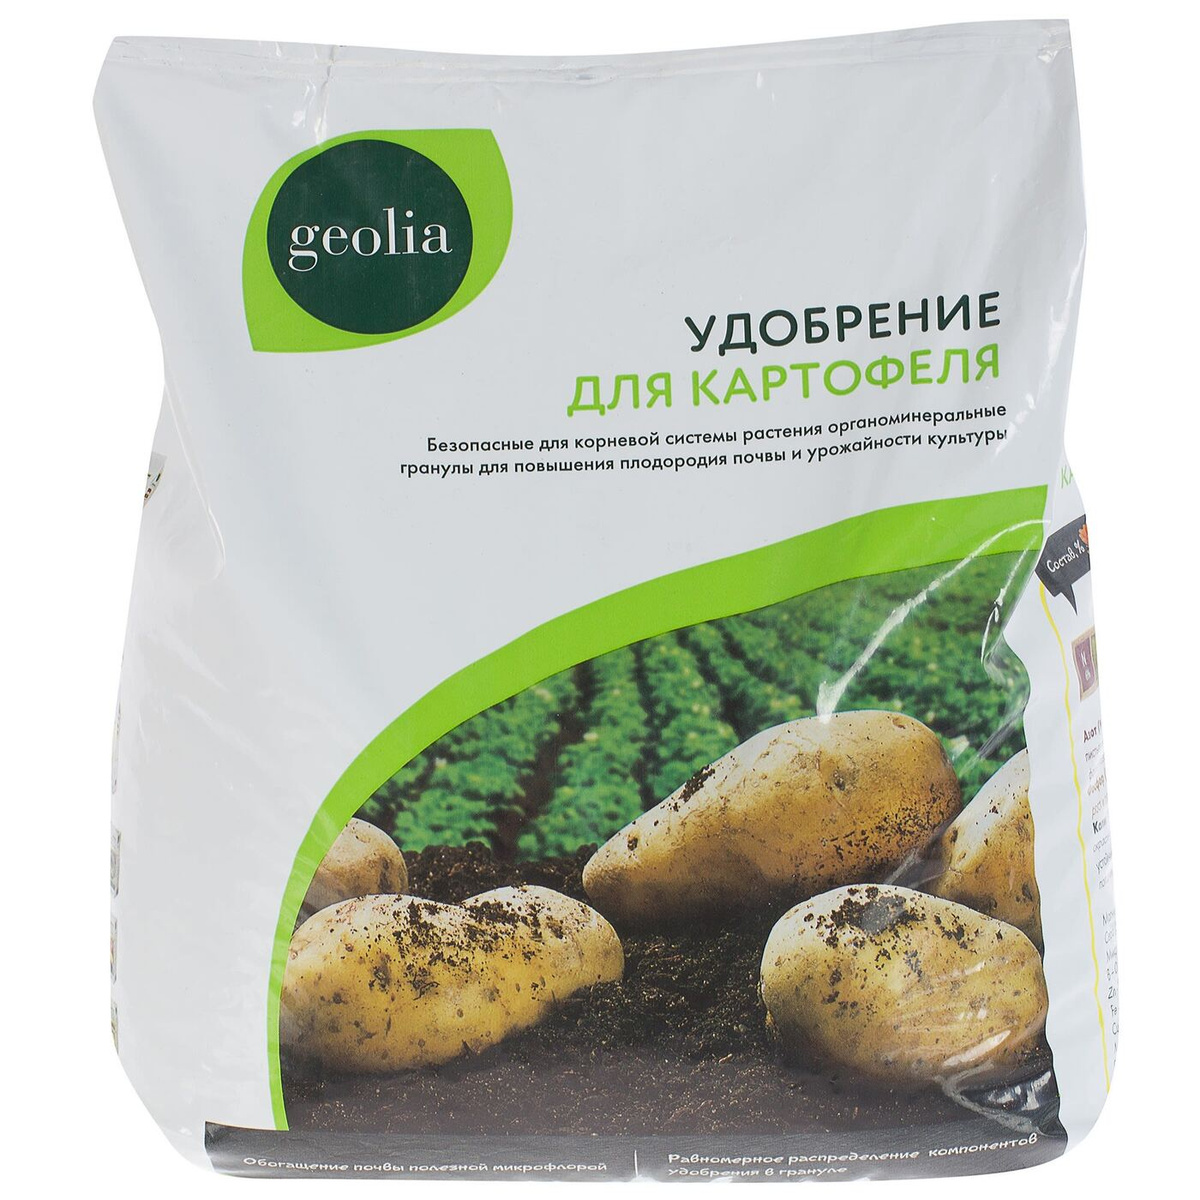 Картофельная подкормка. Удобрение Geolia универсальное органоминеральное 5 кг. Удобрение для картофеля 5 кг Geolia. Удобрение Geolia органоминеральное для газонов 2 кг. Удобрение для картофеля, 1,5кг.